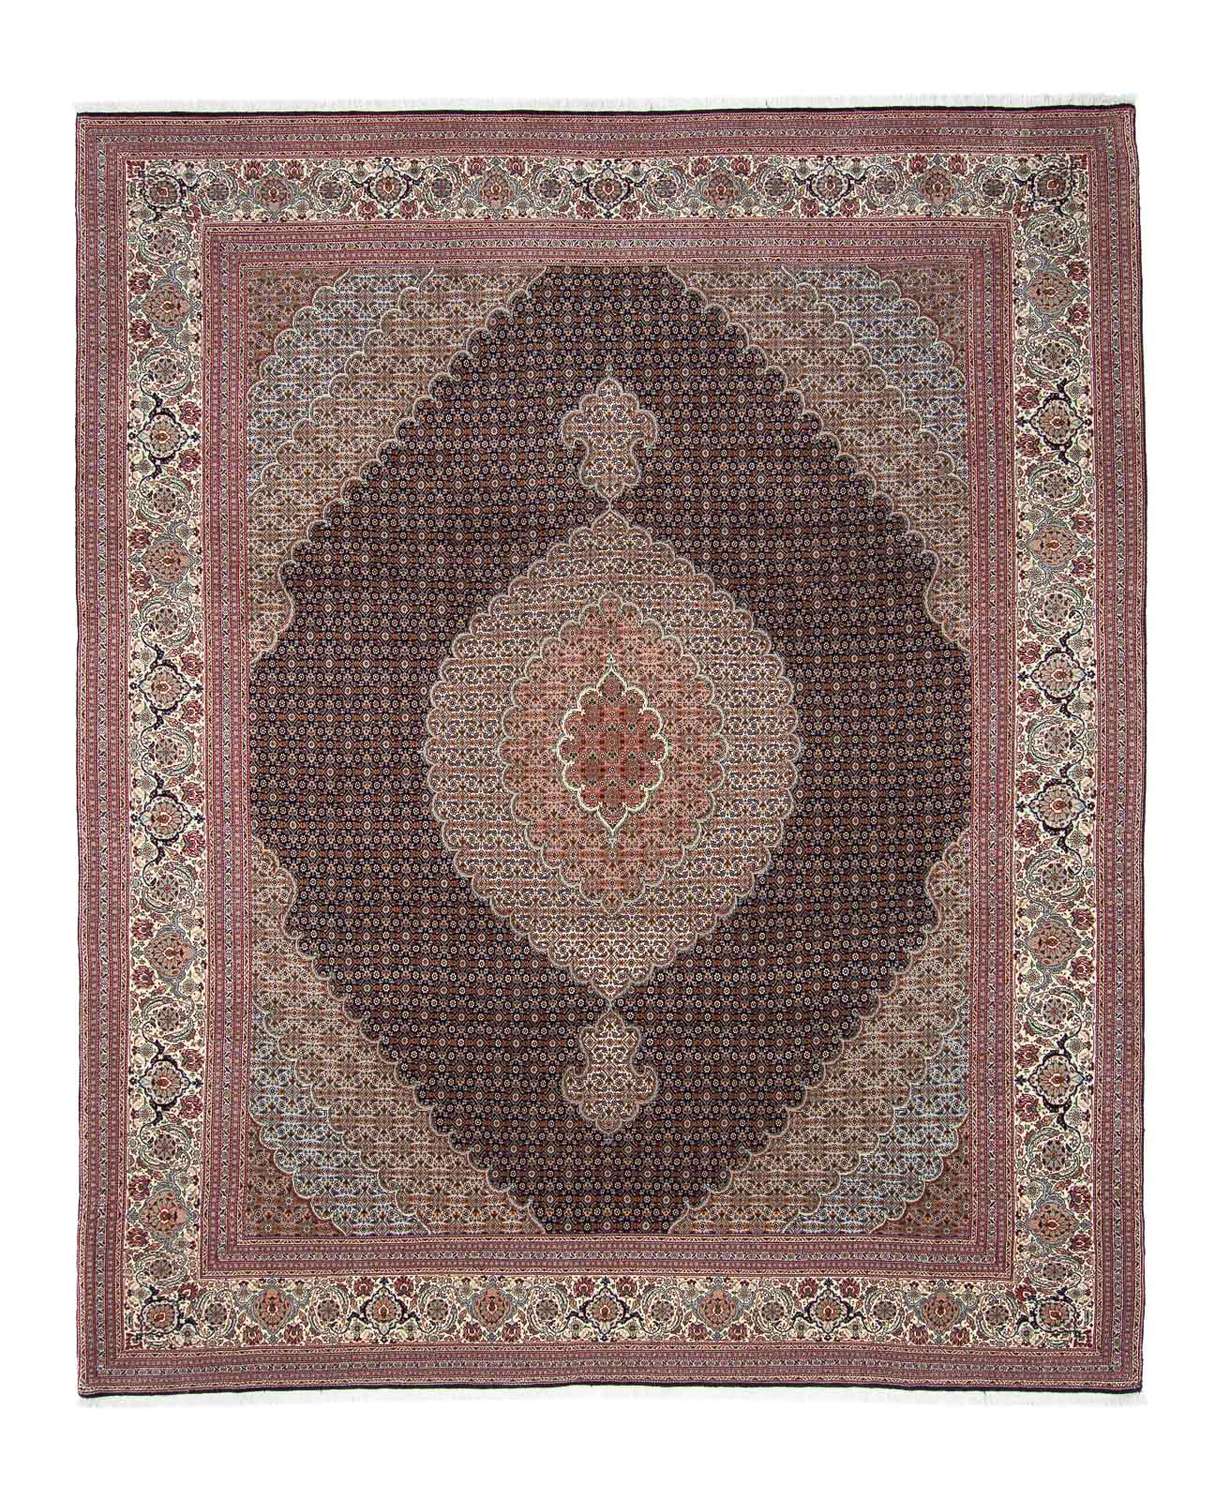 Tapis persan - Tabriz - 310 x 251 cm - marron clair